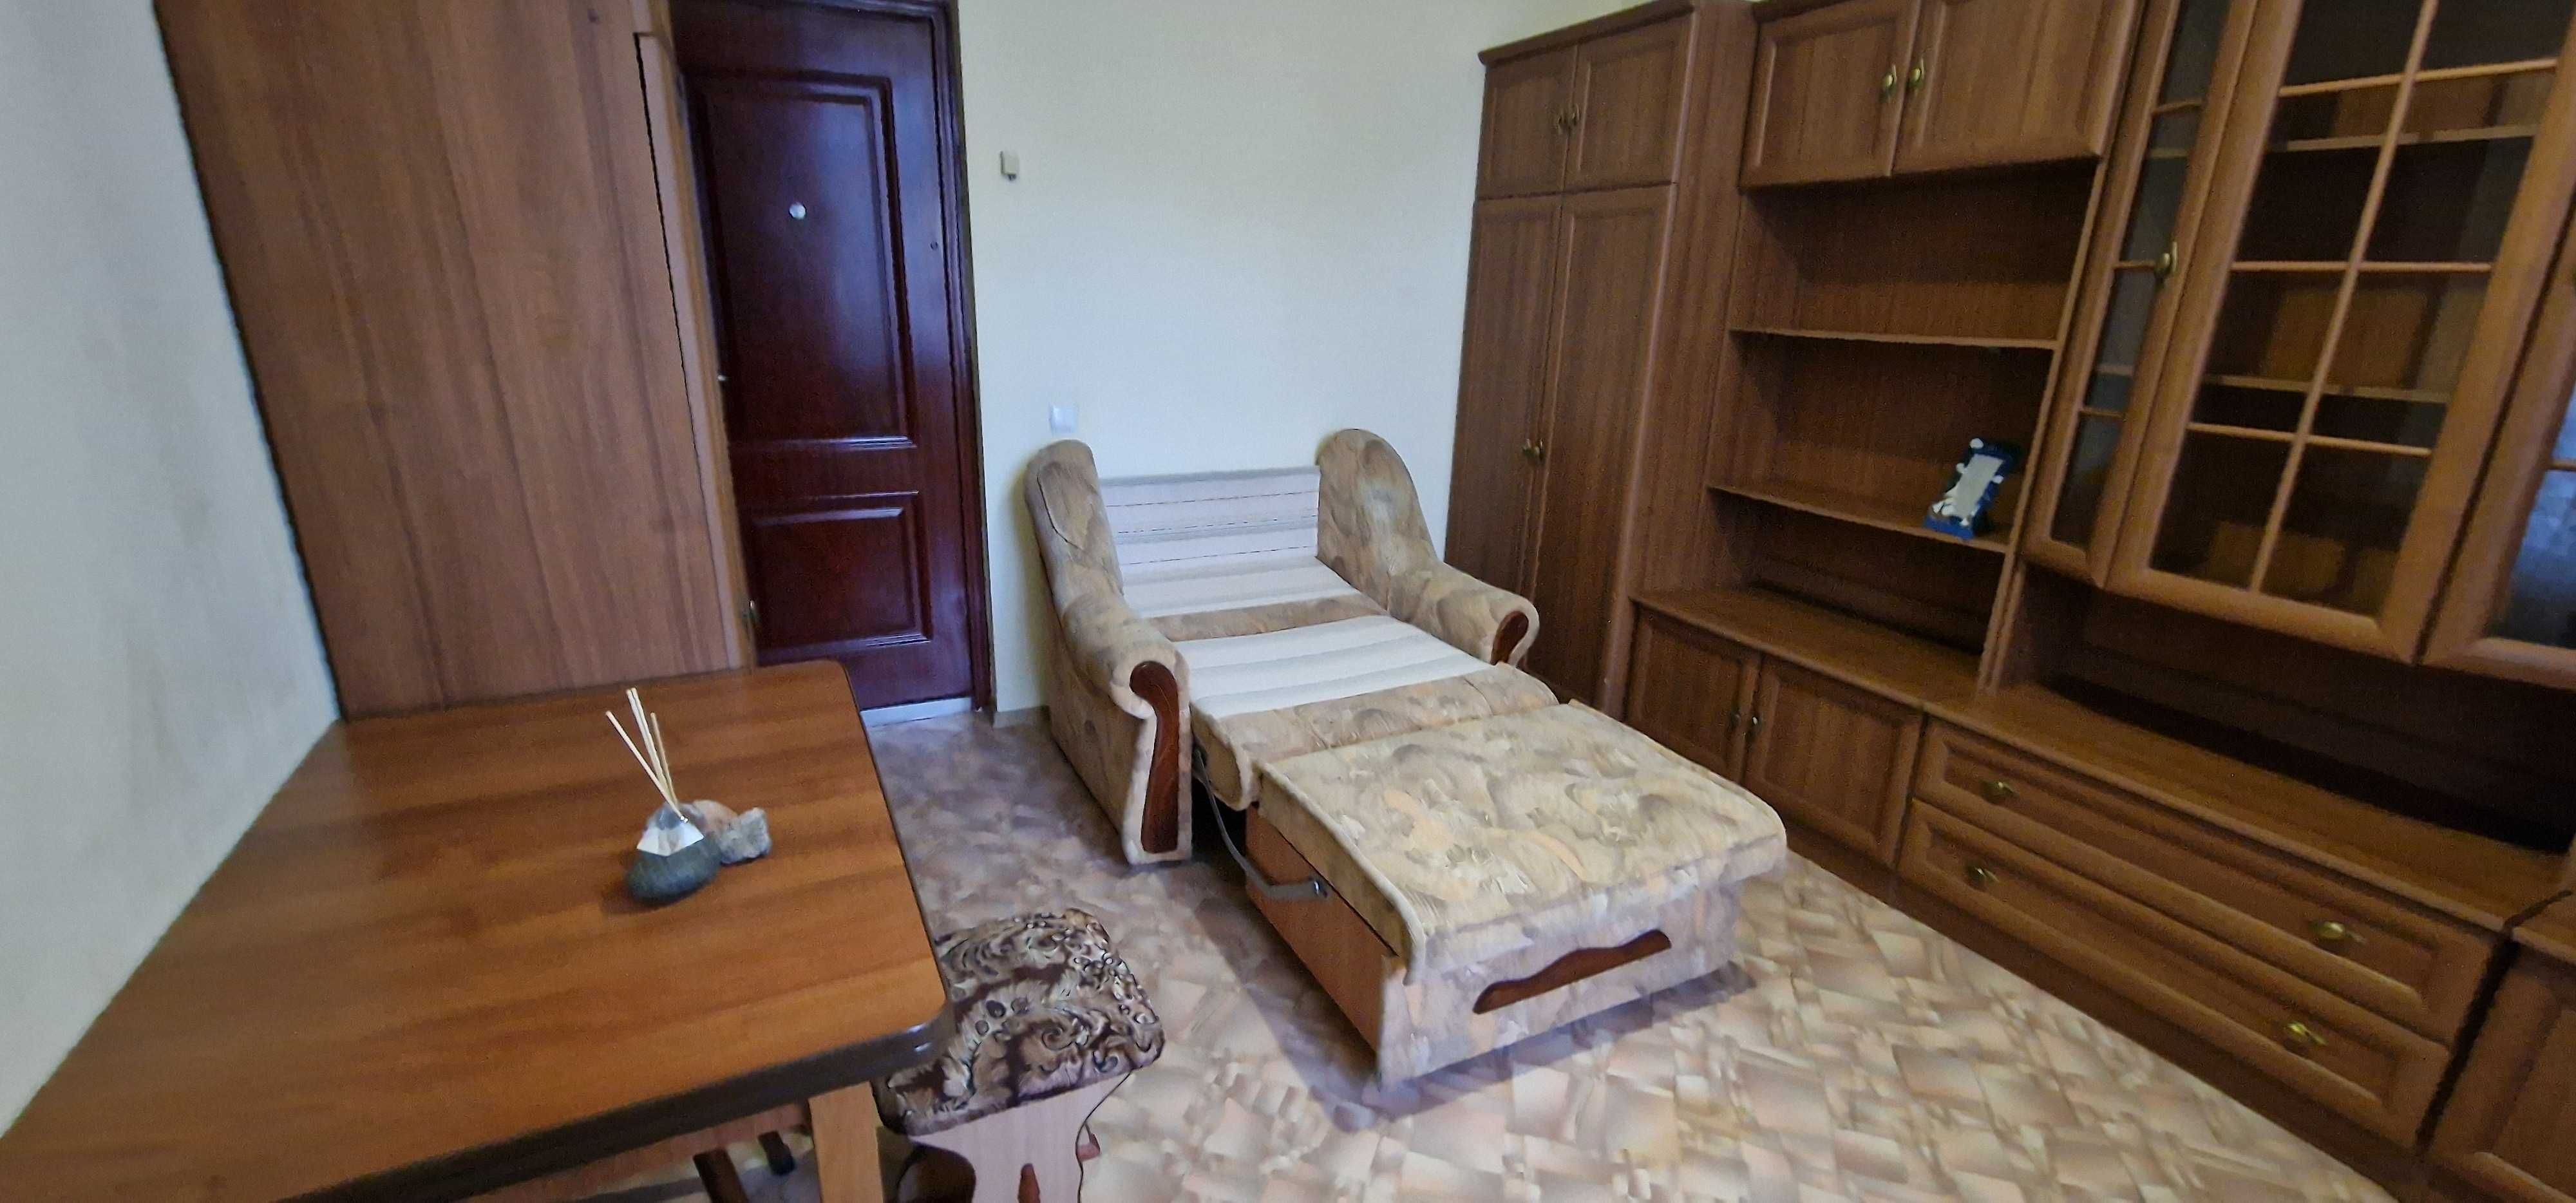 Продается приватизированная комната в общежитии от собственника